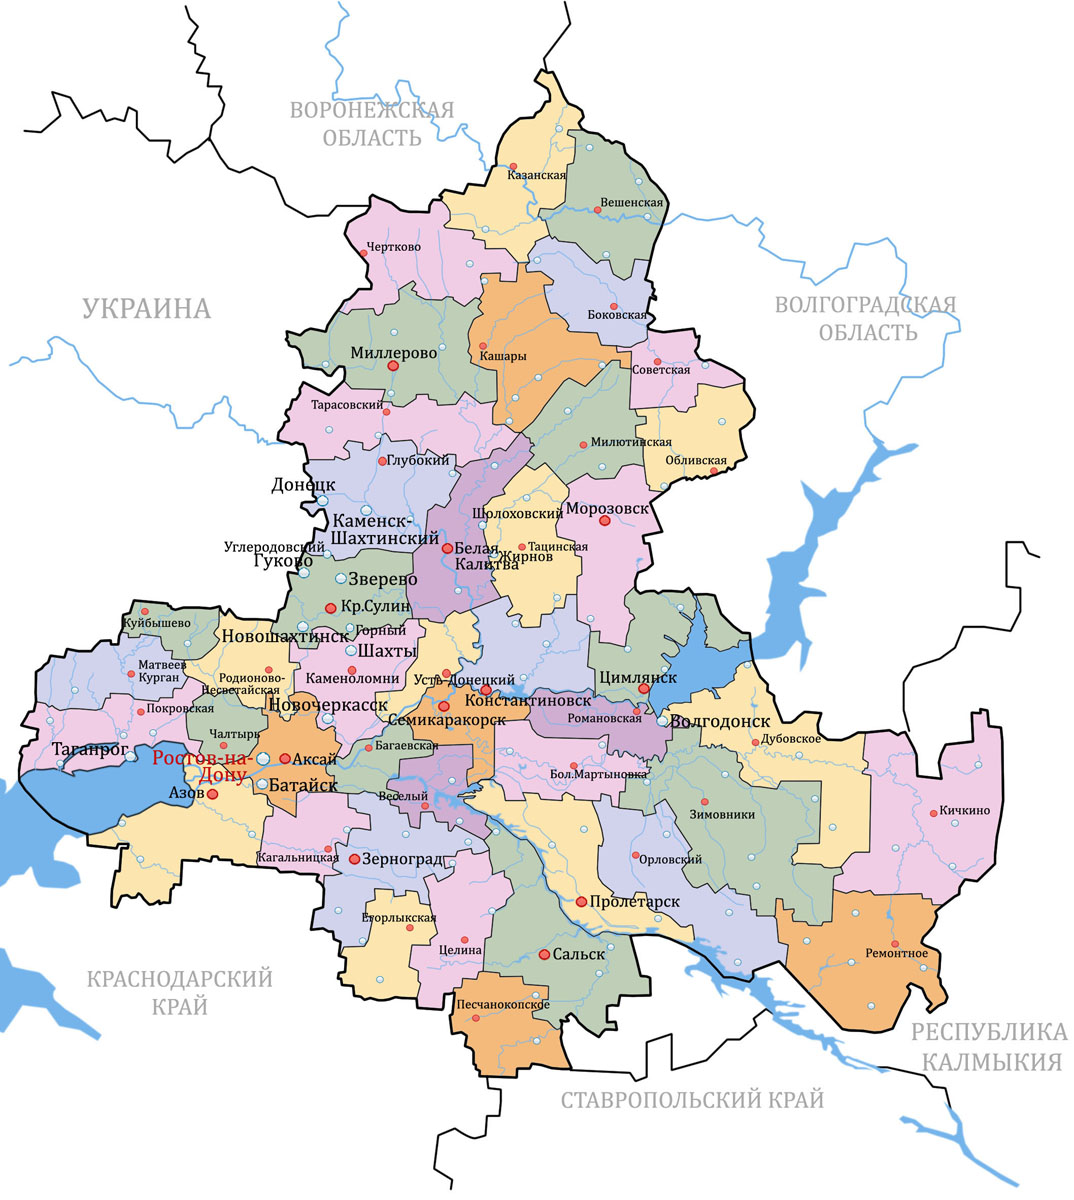 Карта ростовской области кашарского района ростовской области